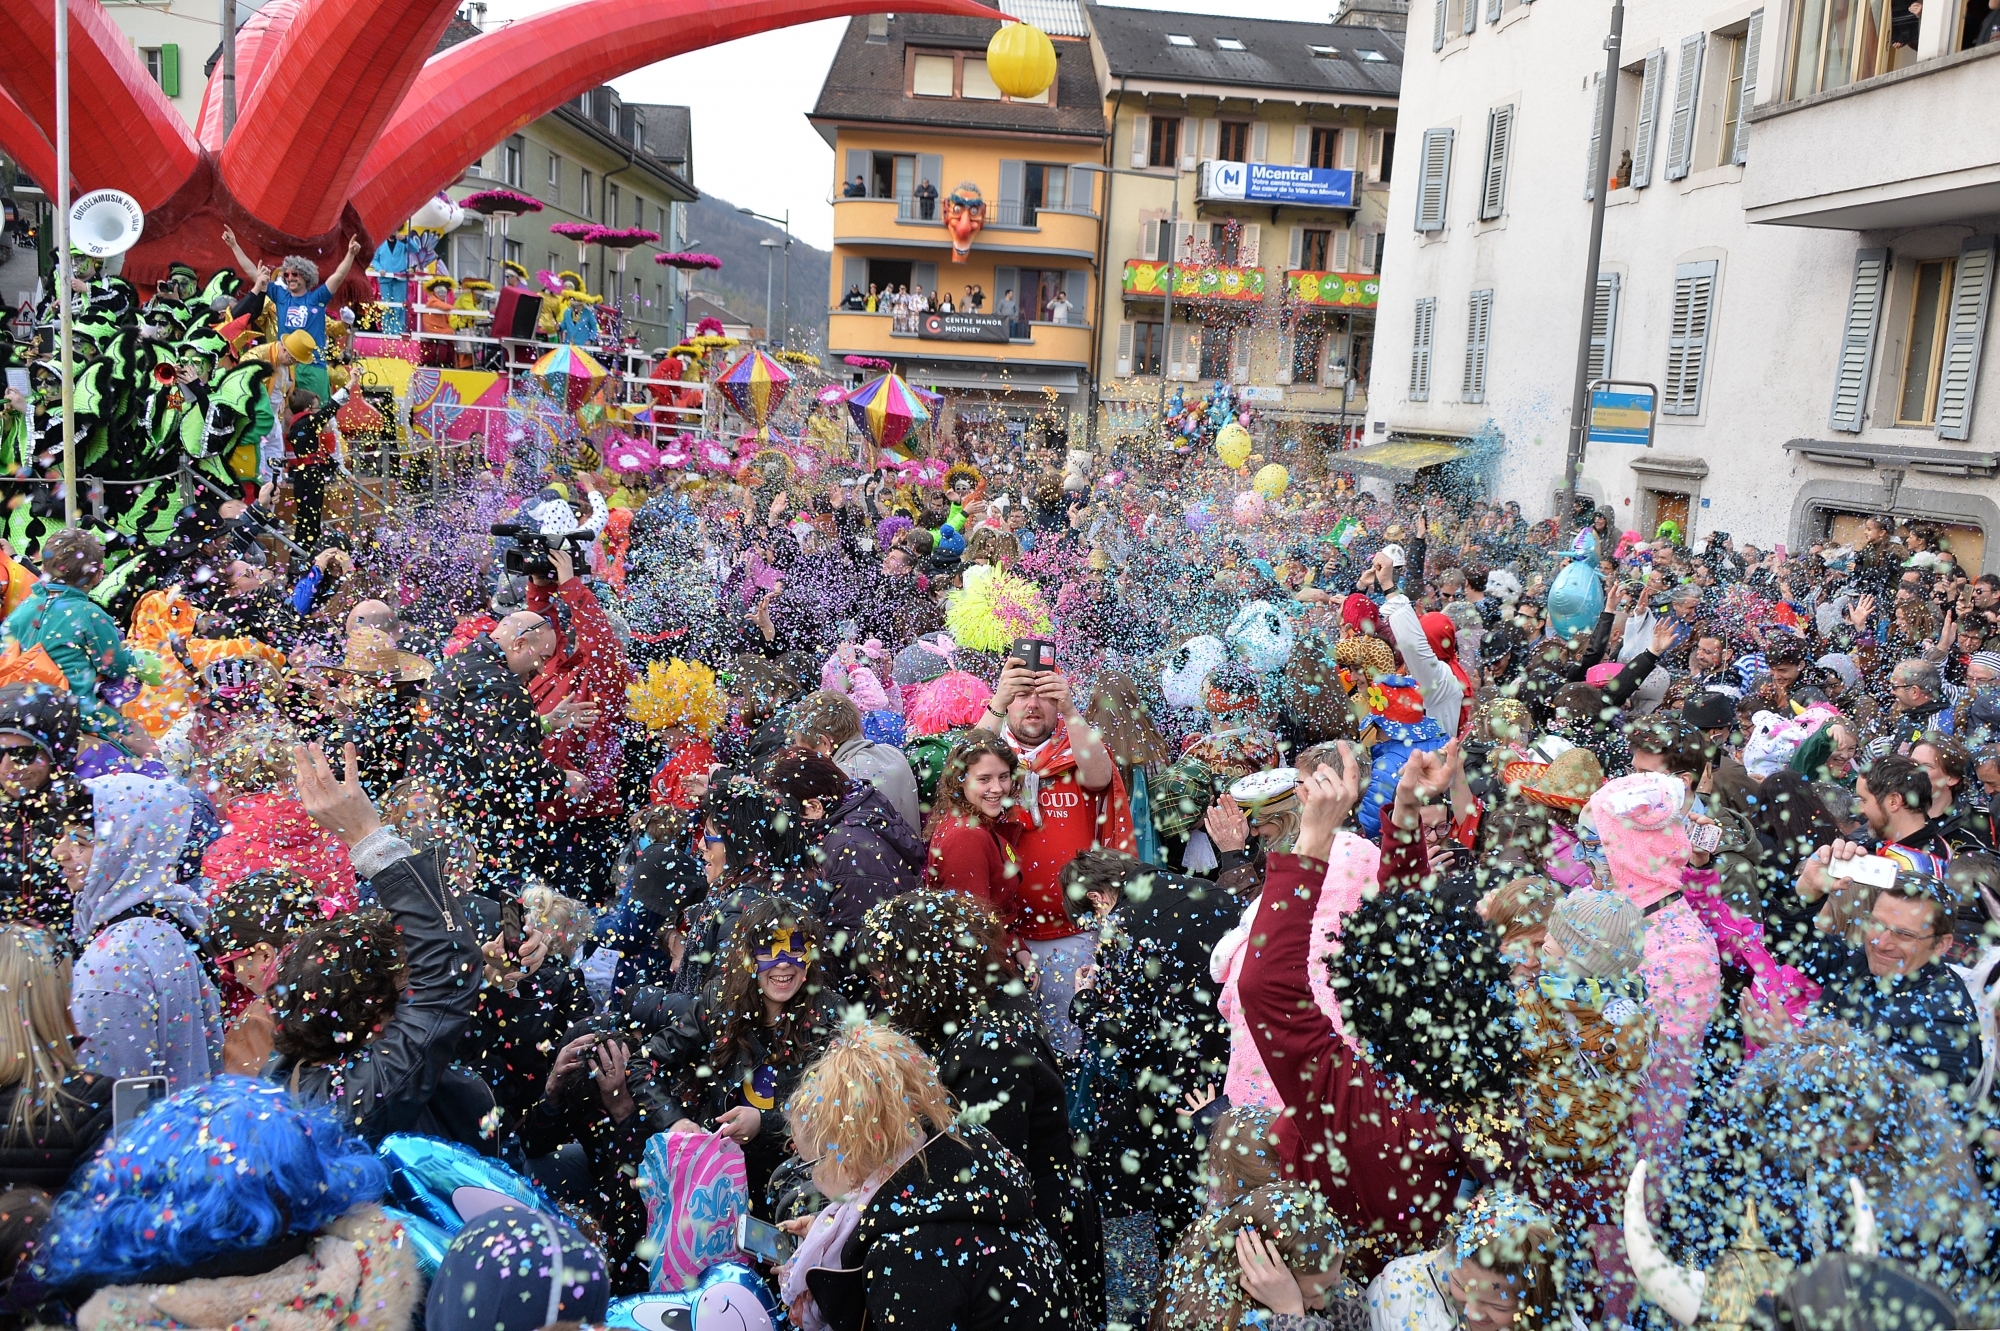 La fameuse bataille de confettis sur la place centrale attire la foule des grands jours.